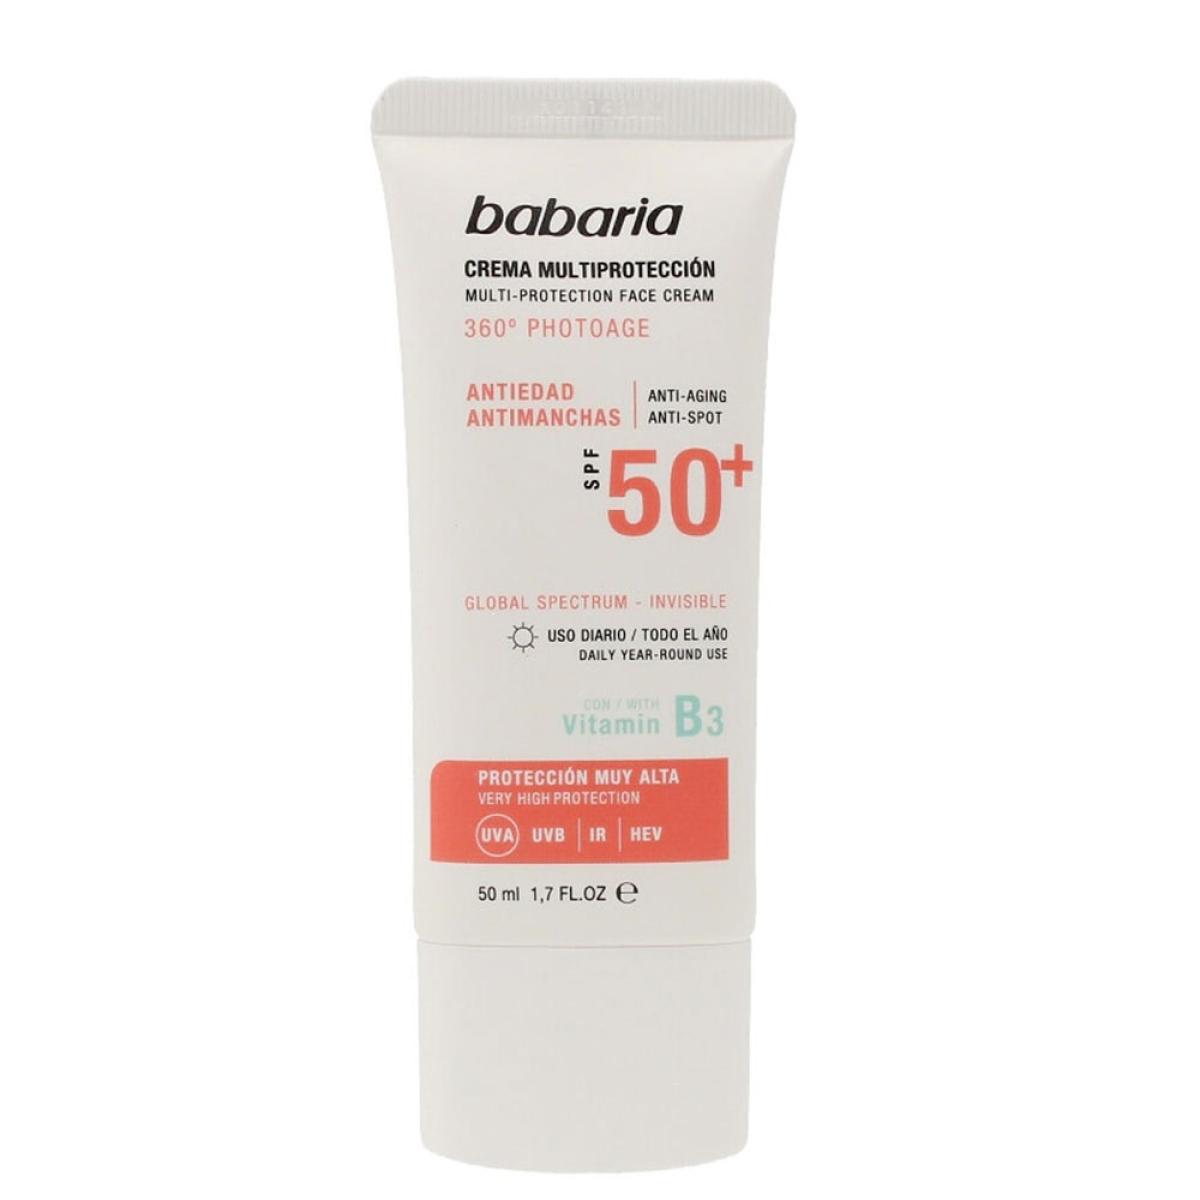 کرم ضد آفتاب بی رنگ spf 50  - Multi-protection facial cream SPF50 + 360º Photoage 50ml